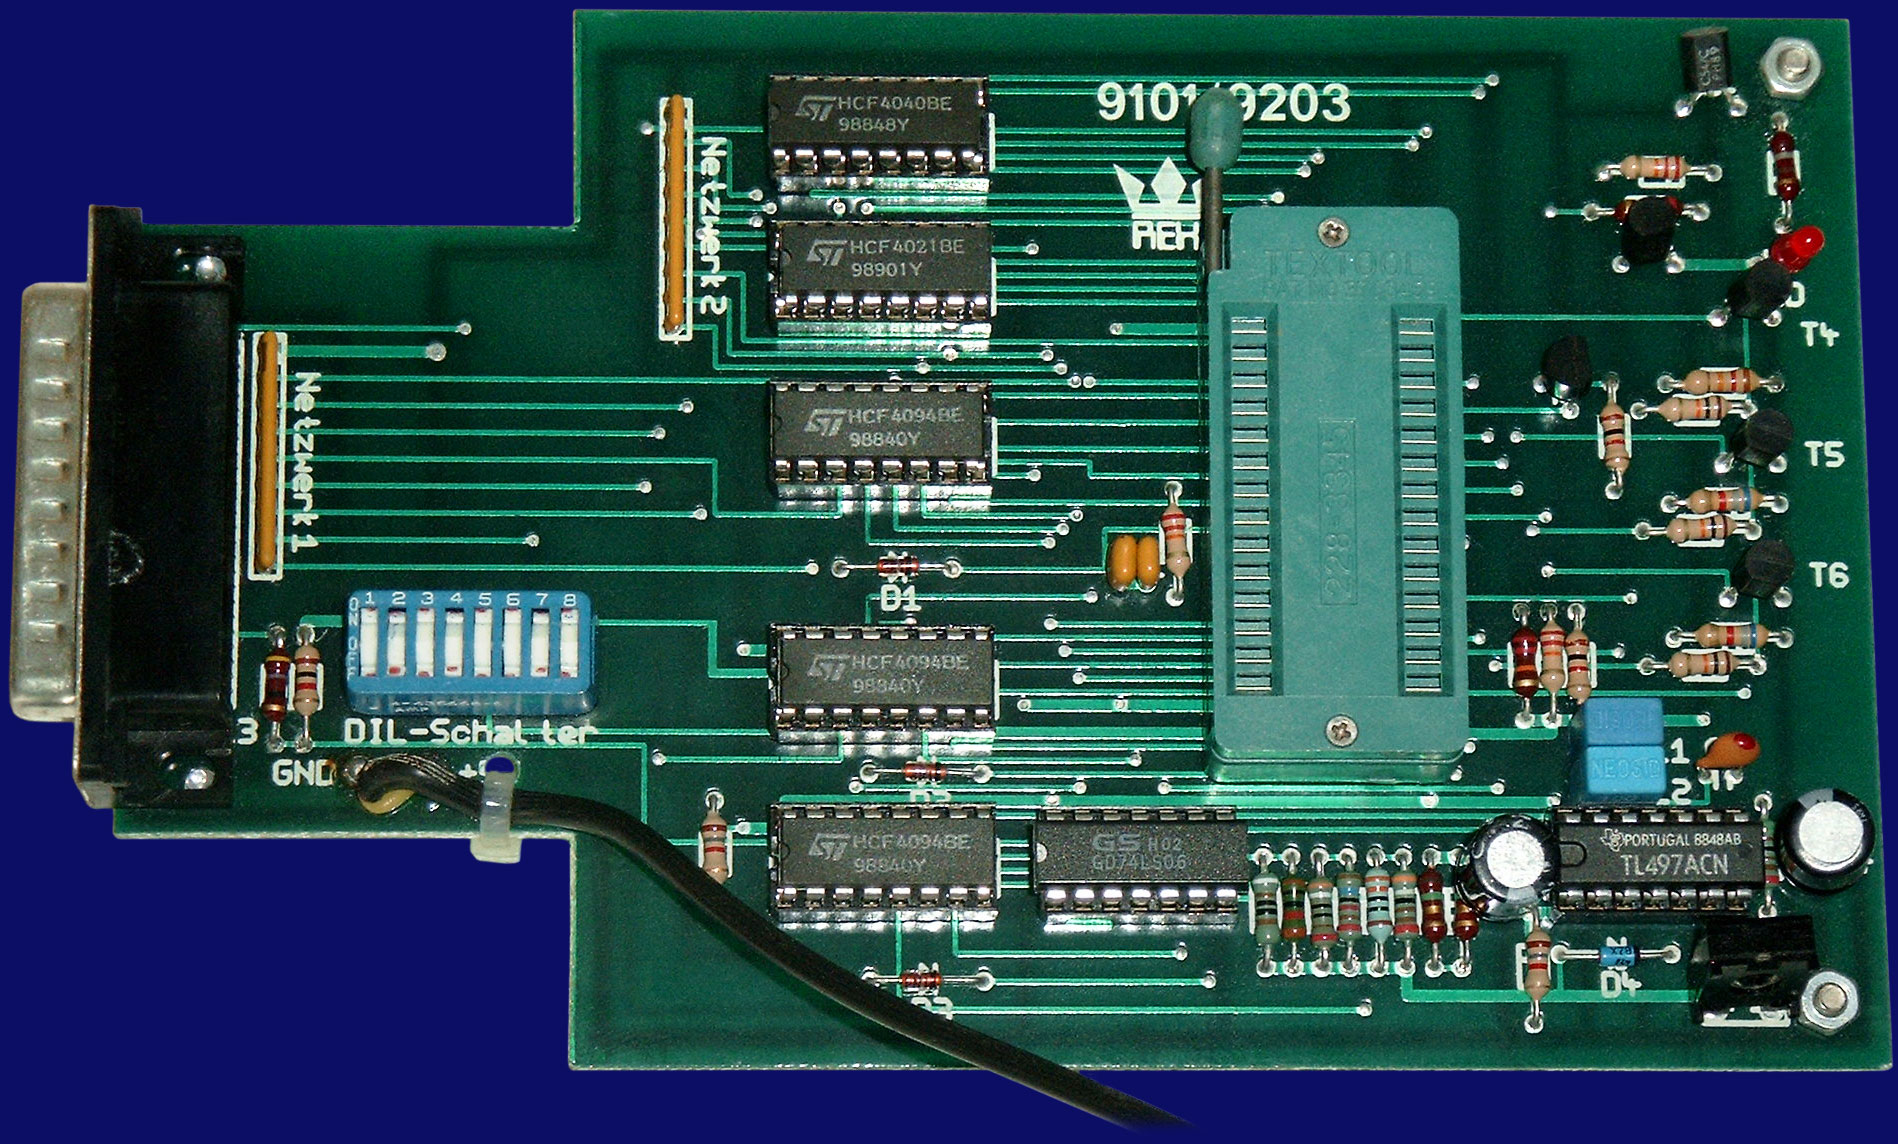 Rex Datentechnik Eprommer 9203 (Quickbyte V) - front side